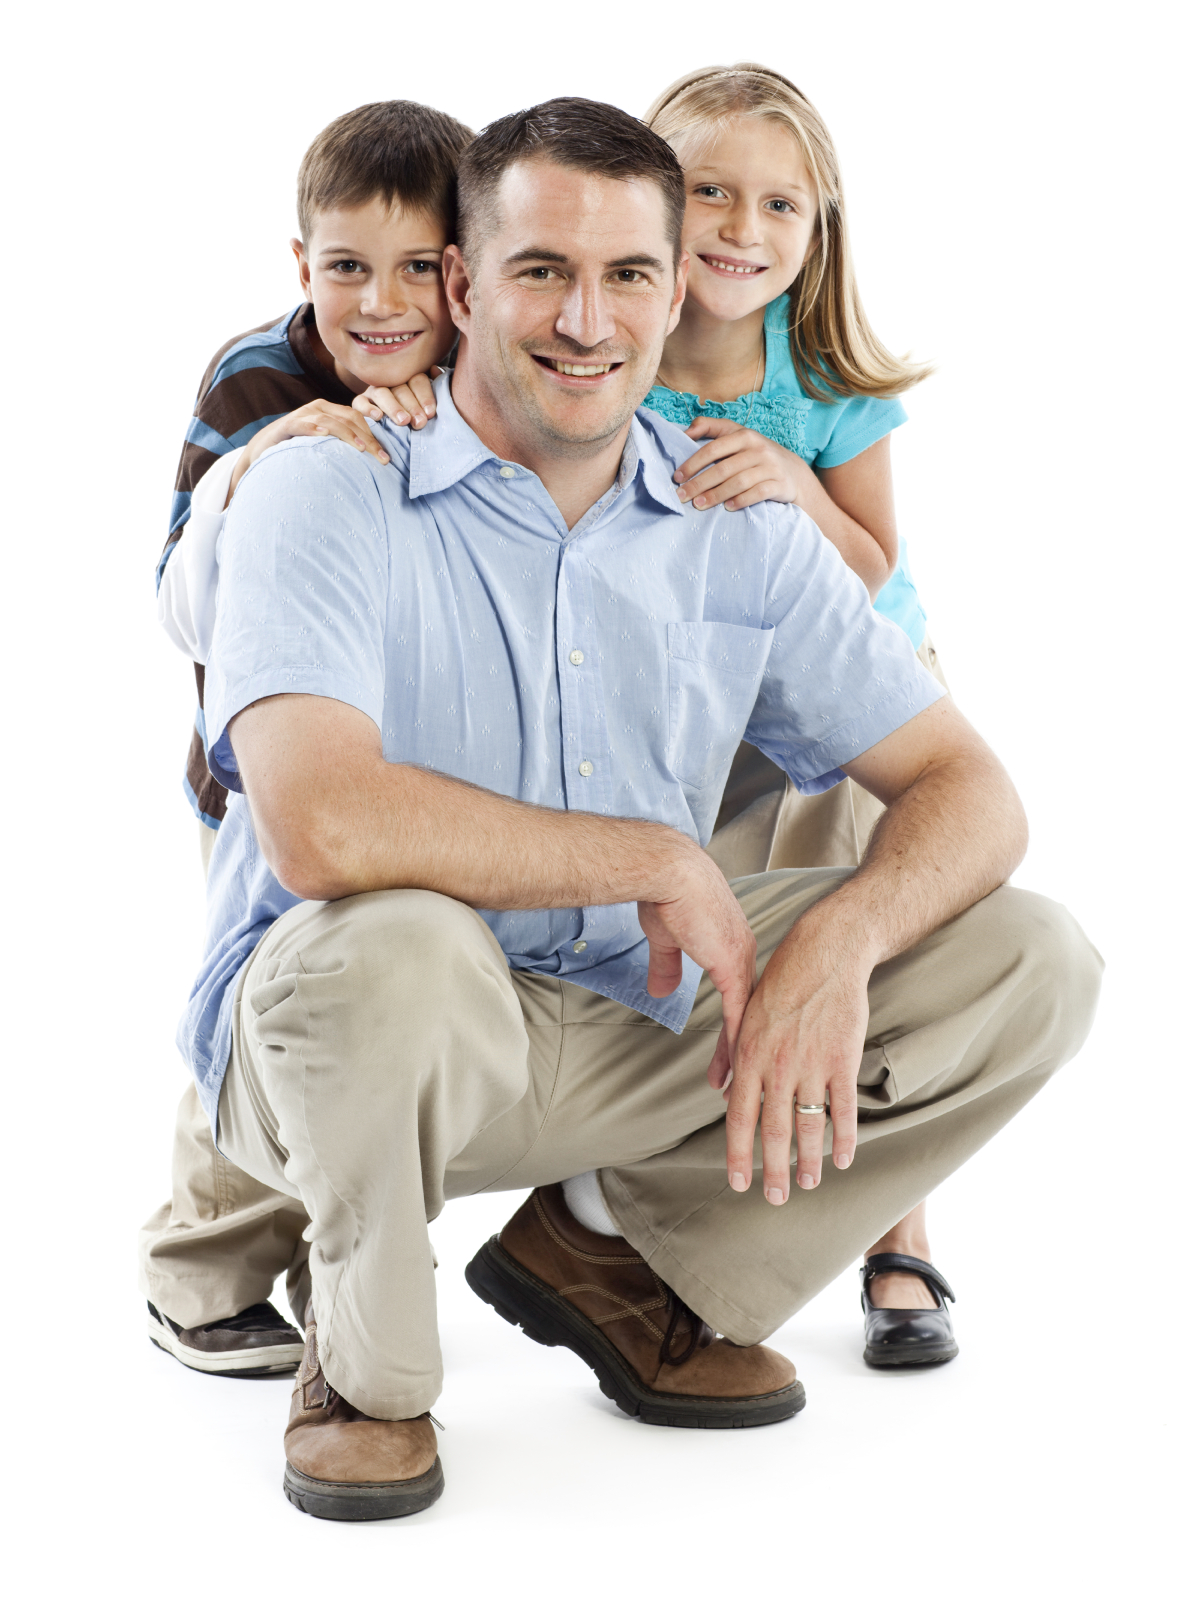 Отец и двое детей Сток фото. Фото семейной покупки на белом фоне.